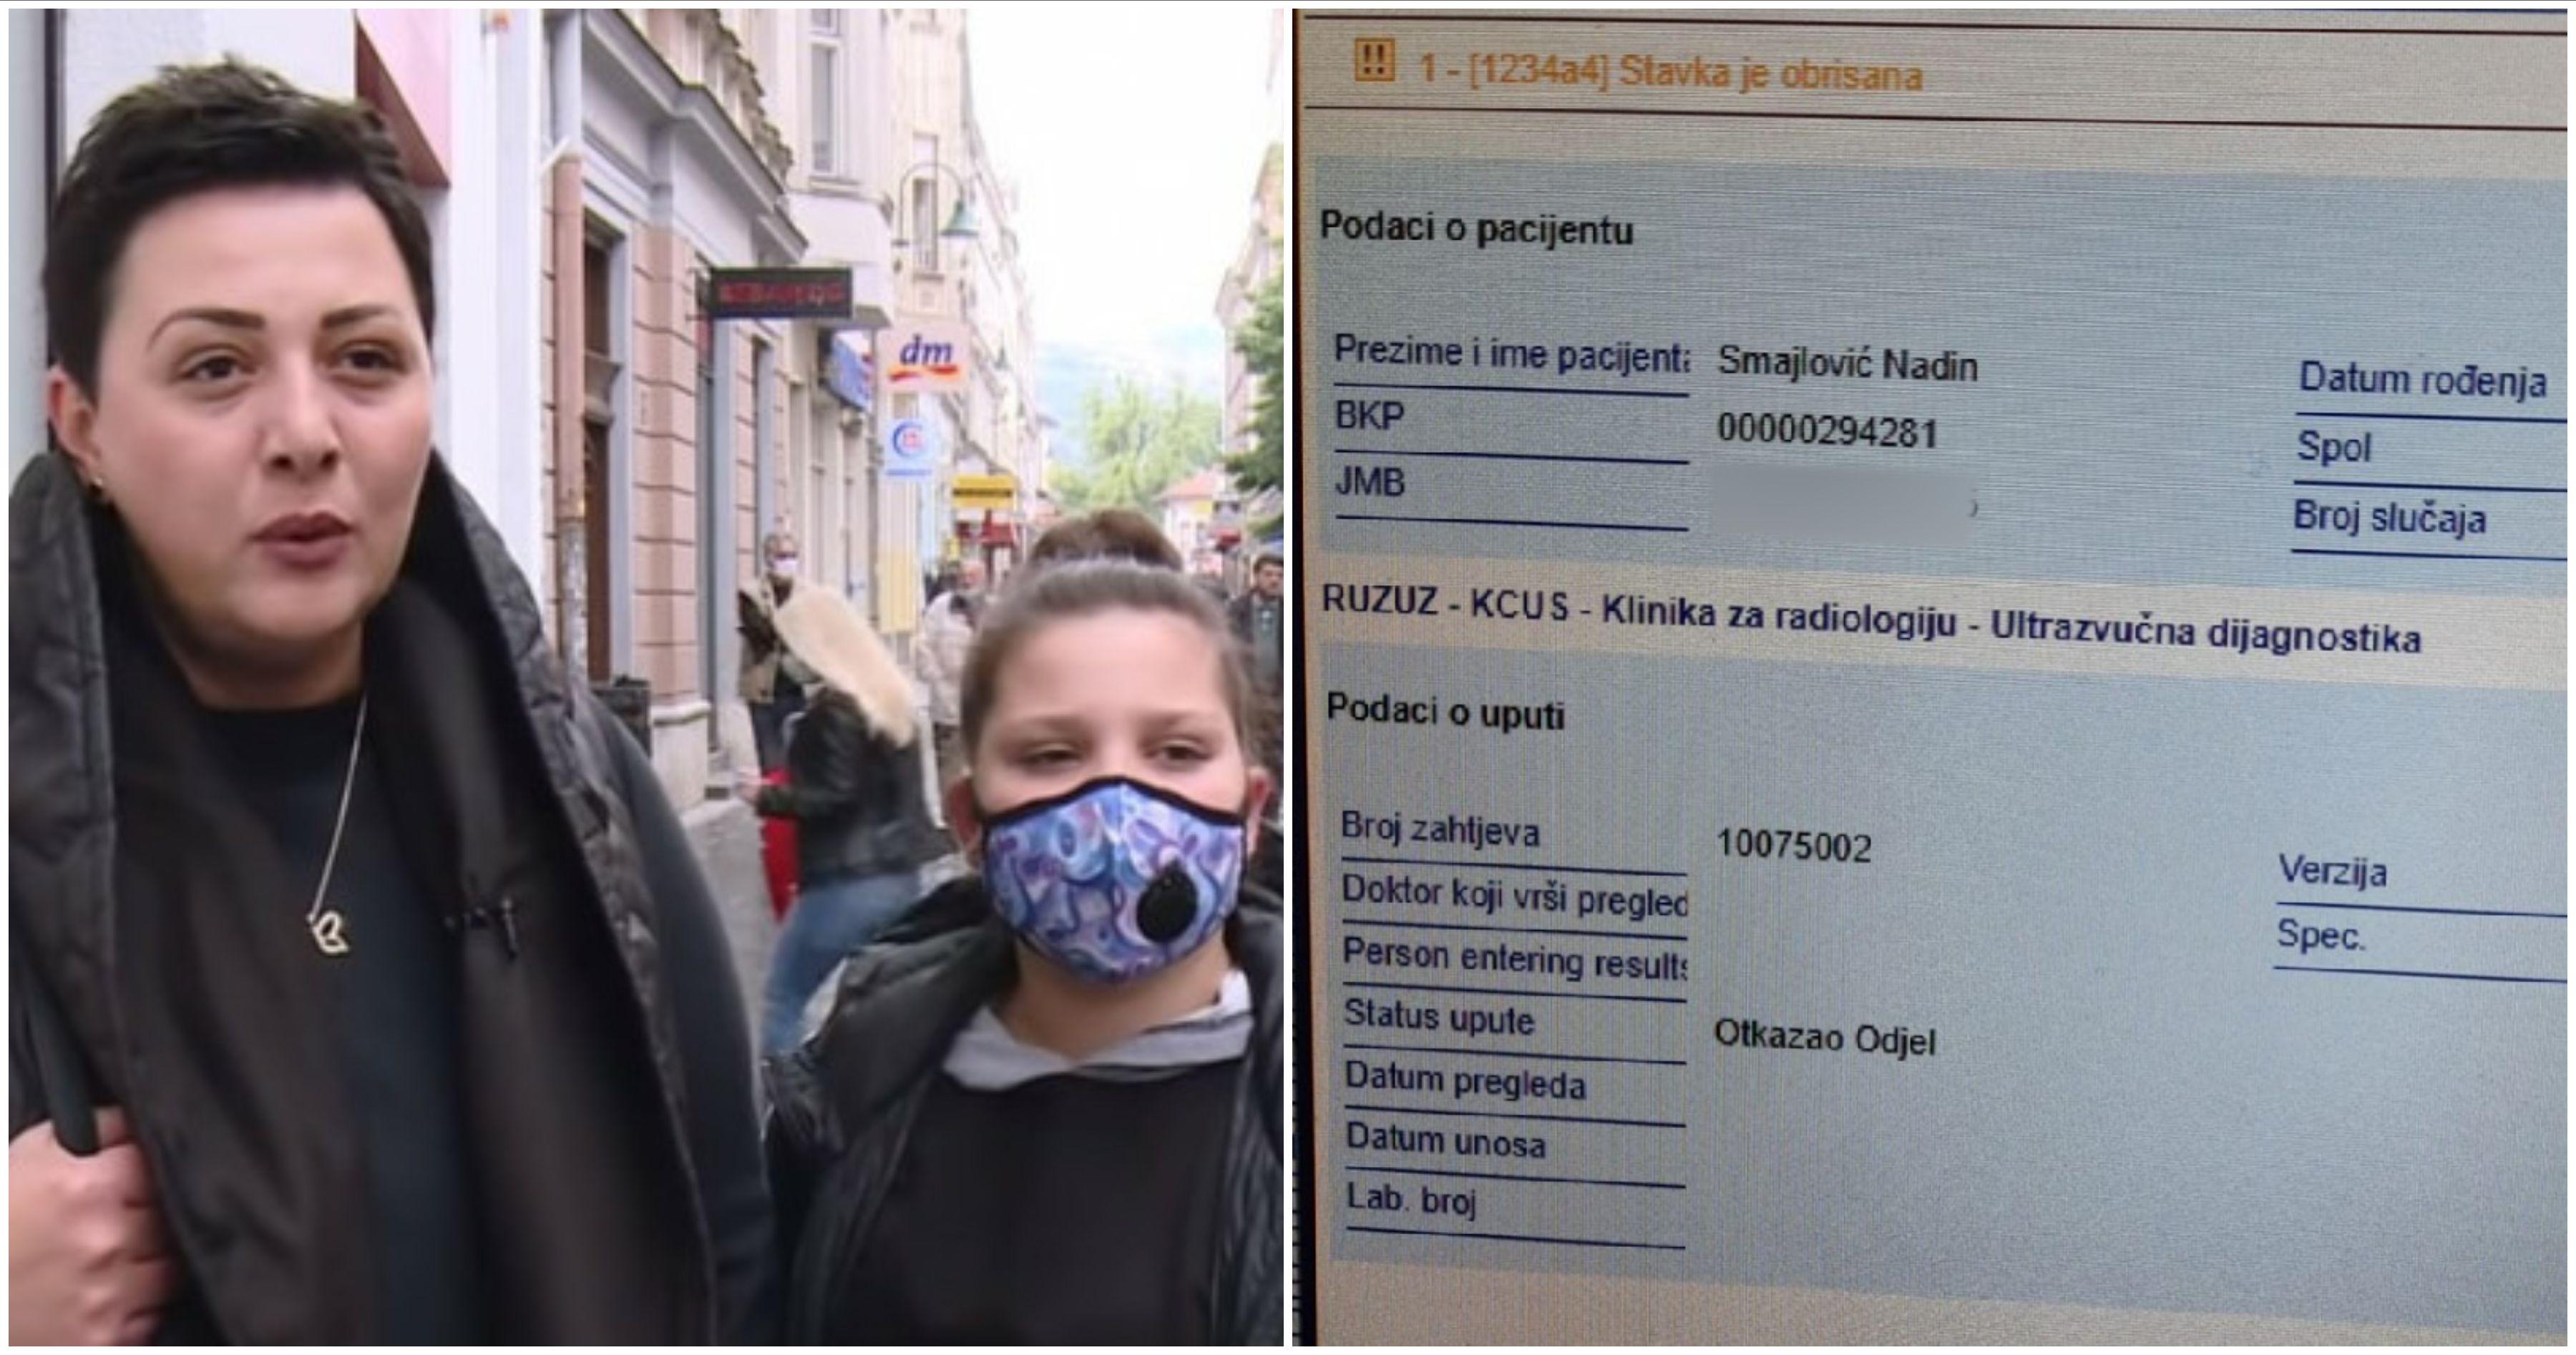 Roditelji djevojčice Nadin Smajlović sumnjaju da je iz bolničkog informacionog sistema KCUS-a izbrisano otpusno pismo